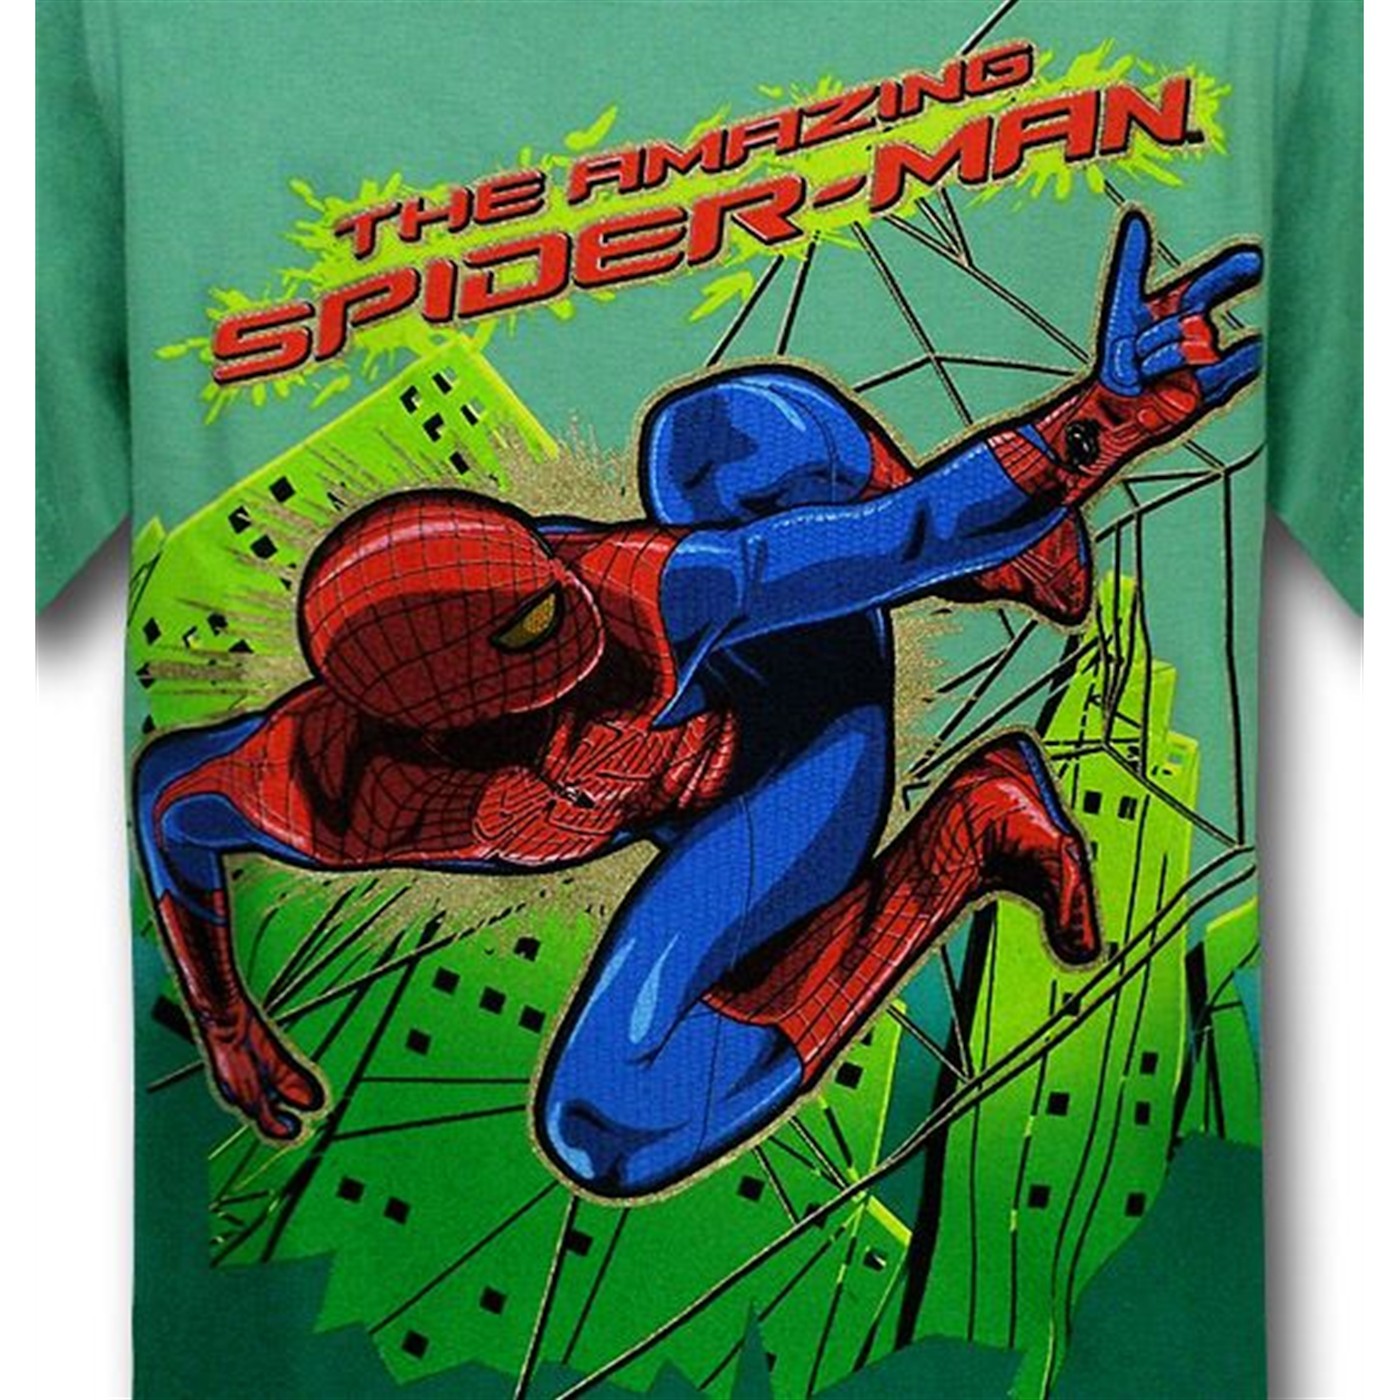 Spider-Man Movie Green City Kids T-Shirt